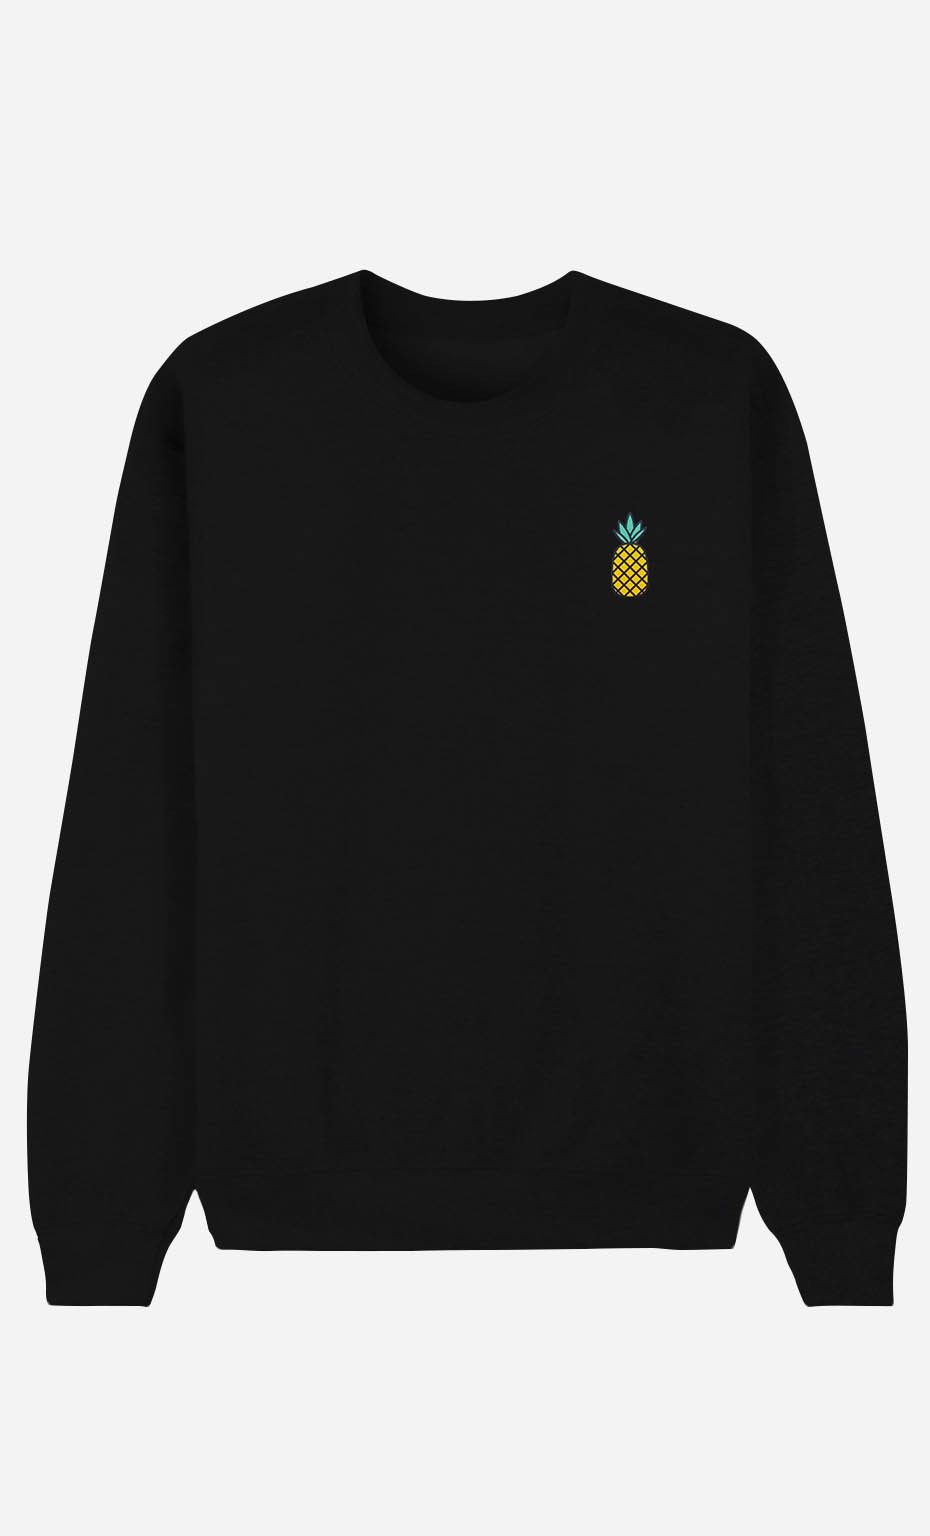 Black Sweatshirt Pineapple - embroidered